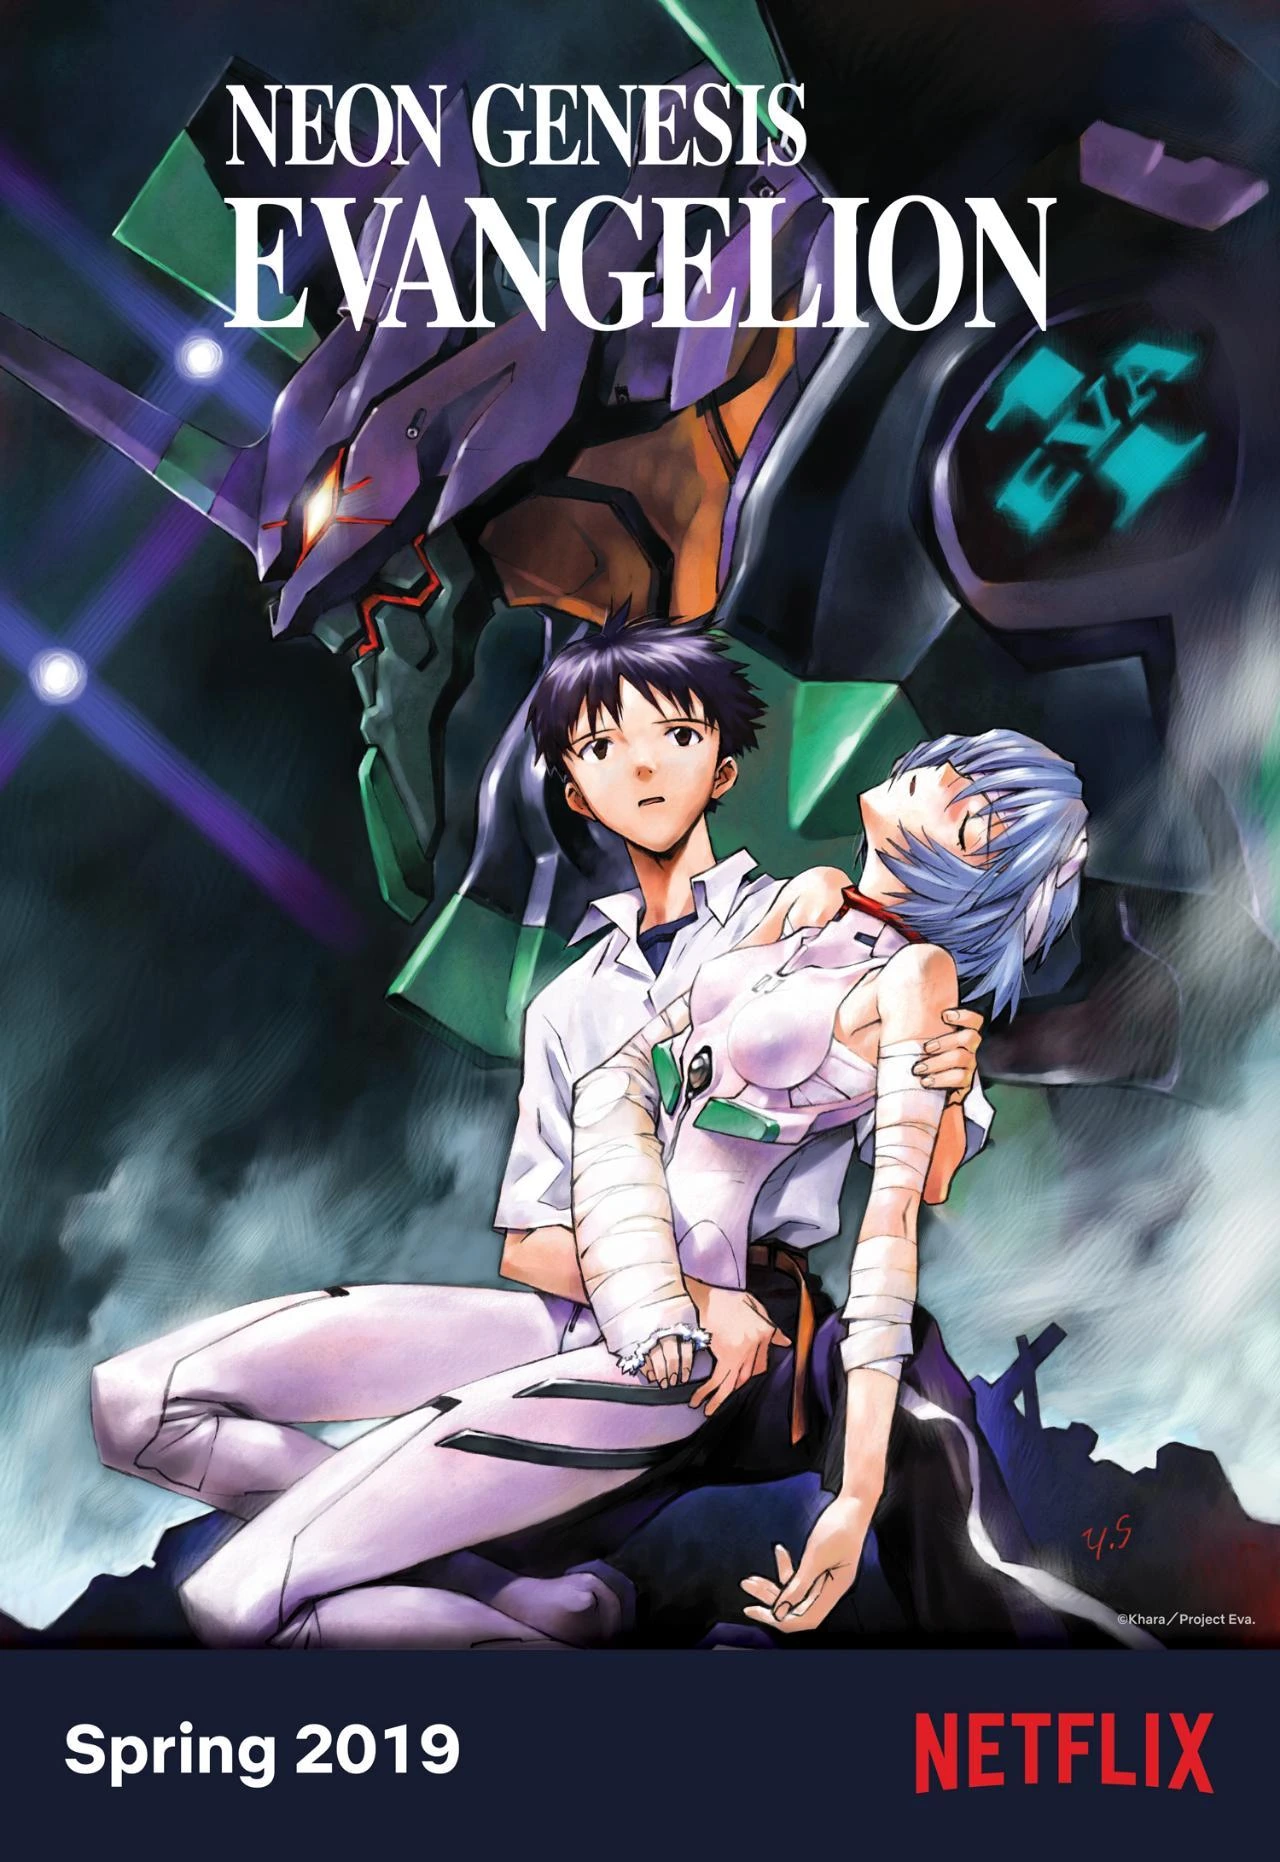 10 Animes com Robôs Gigantes - Animes Mecha  Evangelion, Neon genesis  evangelion, Neon evangelion